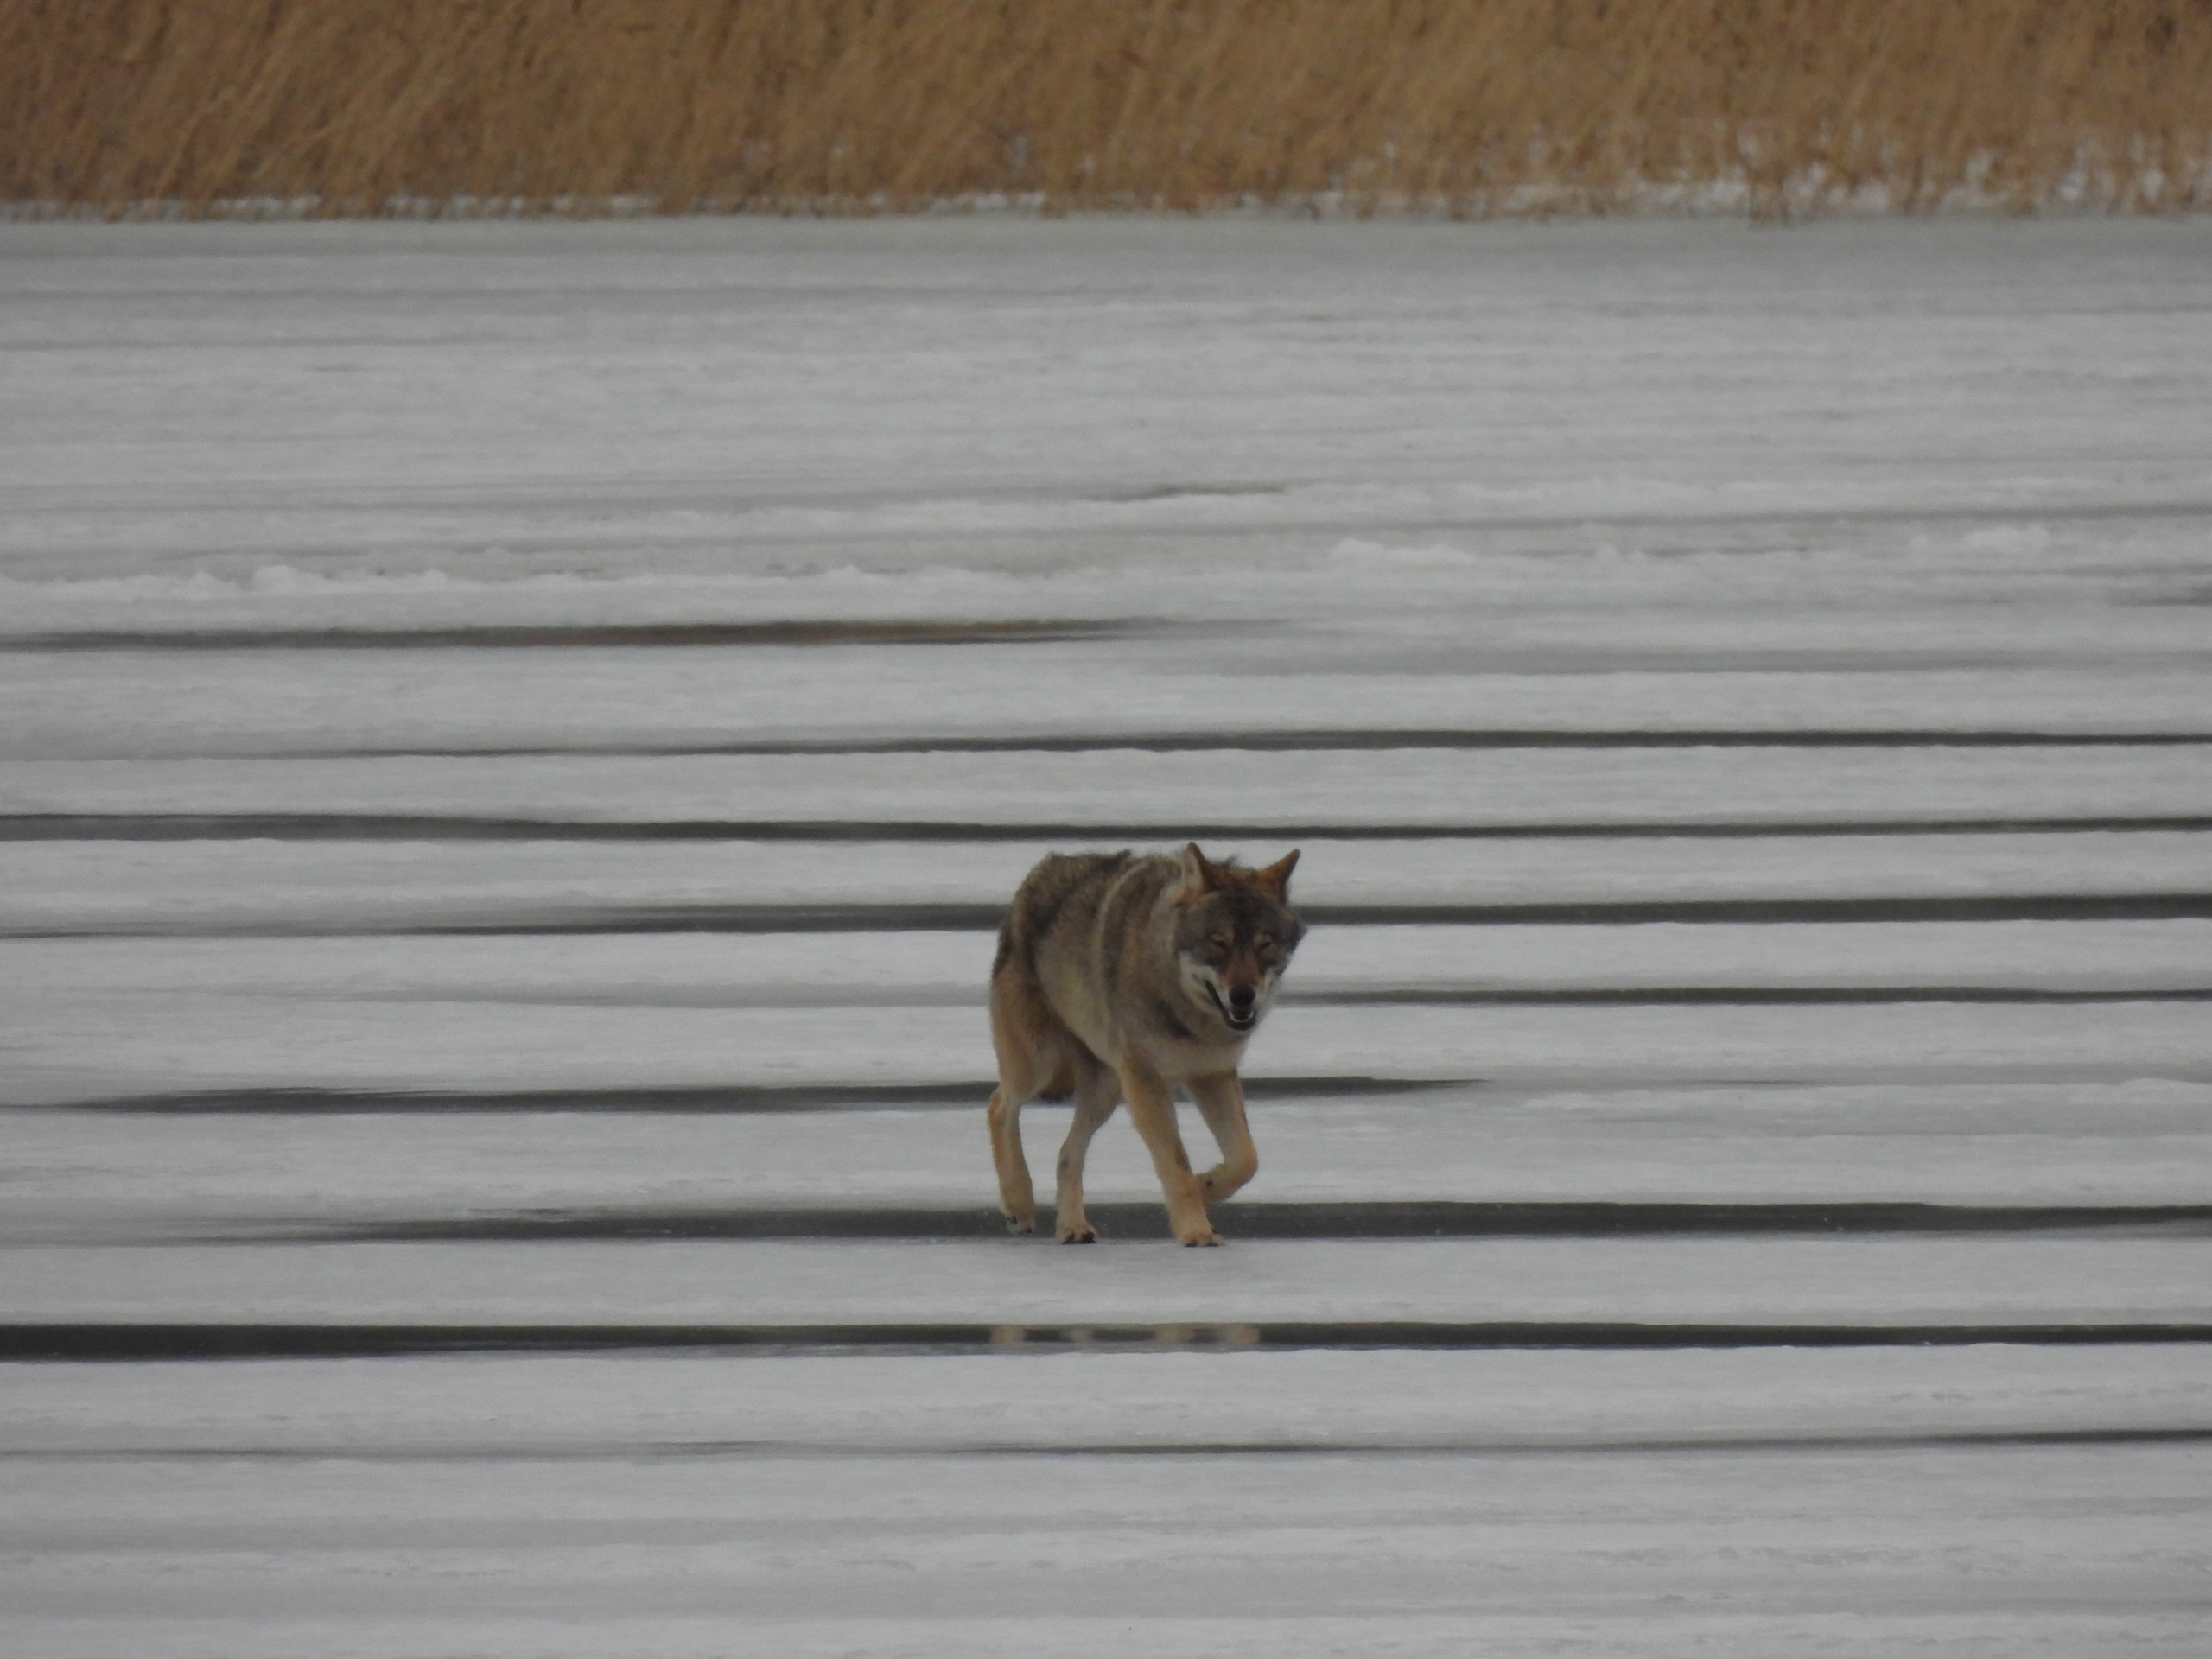 En varg går över isen.